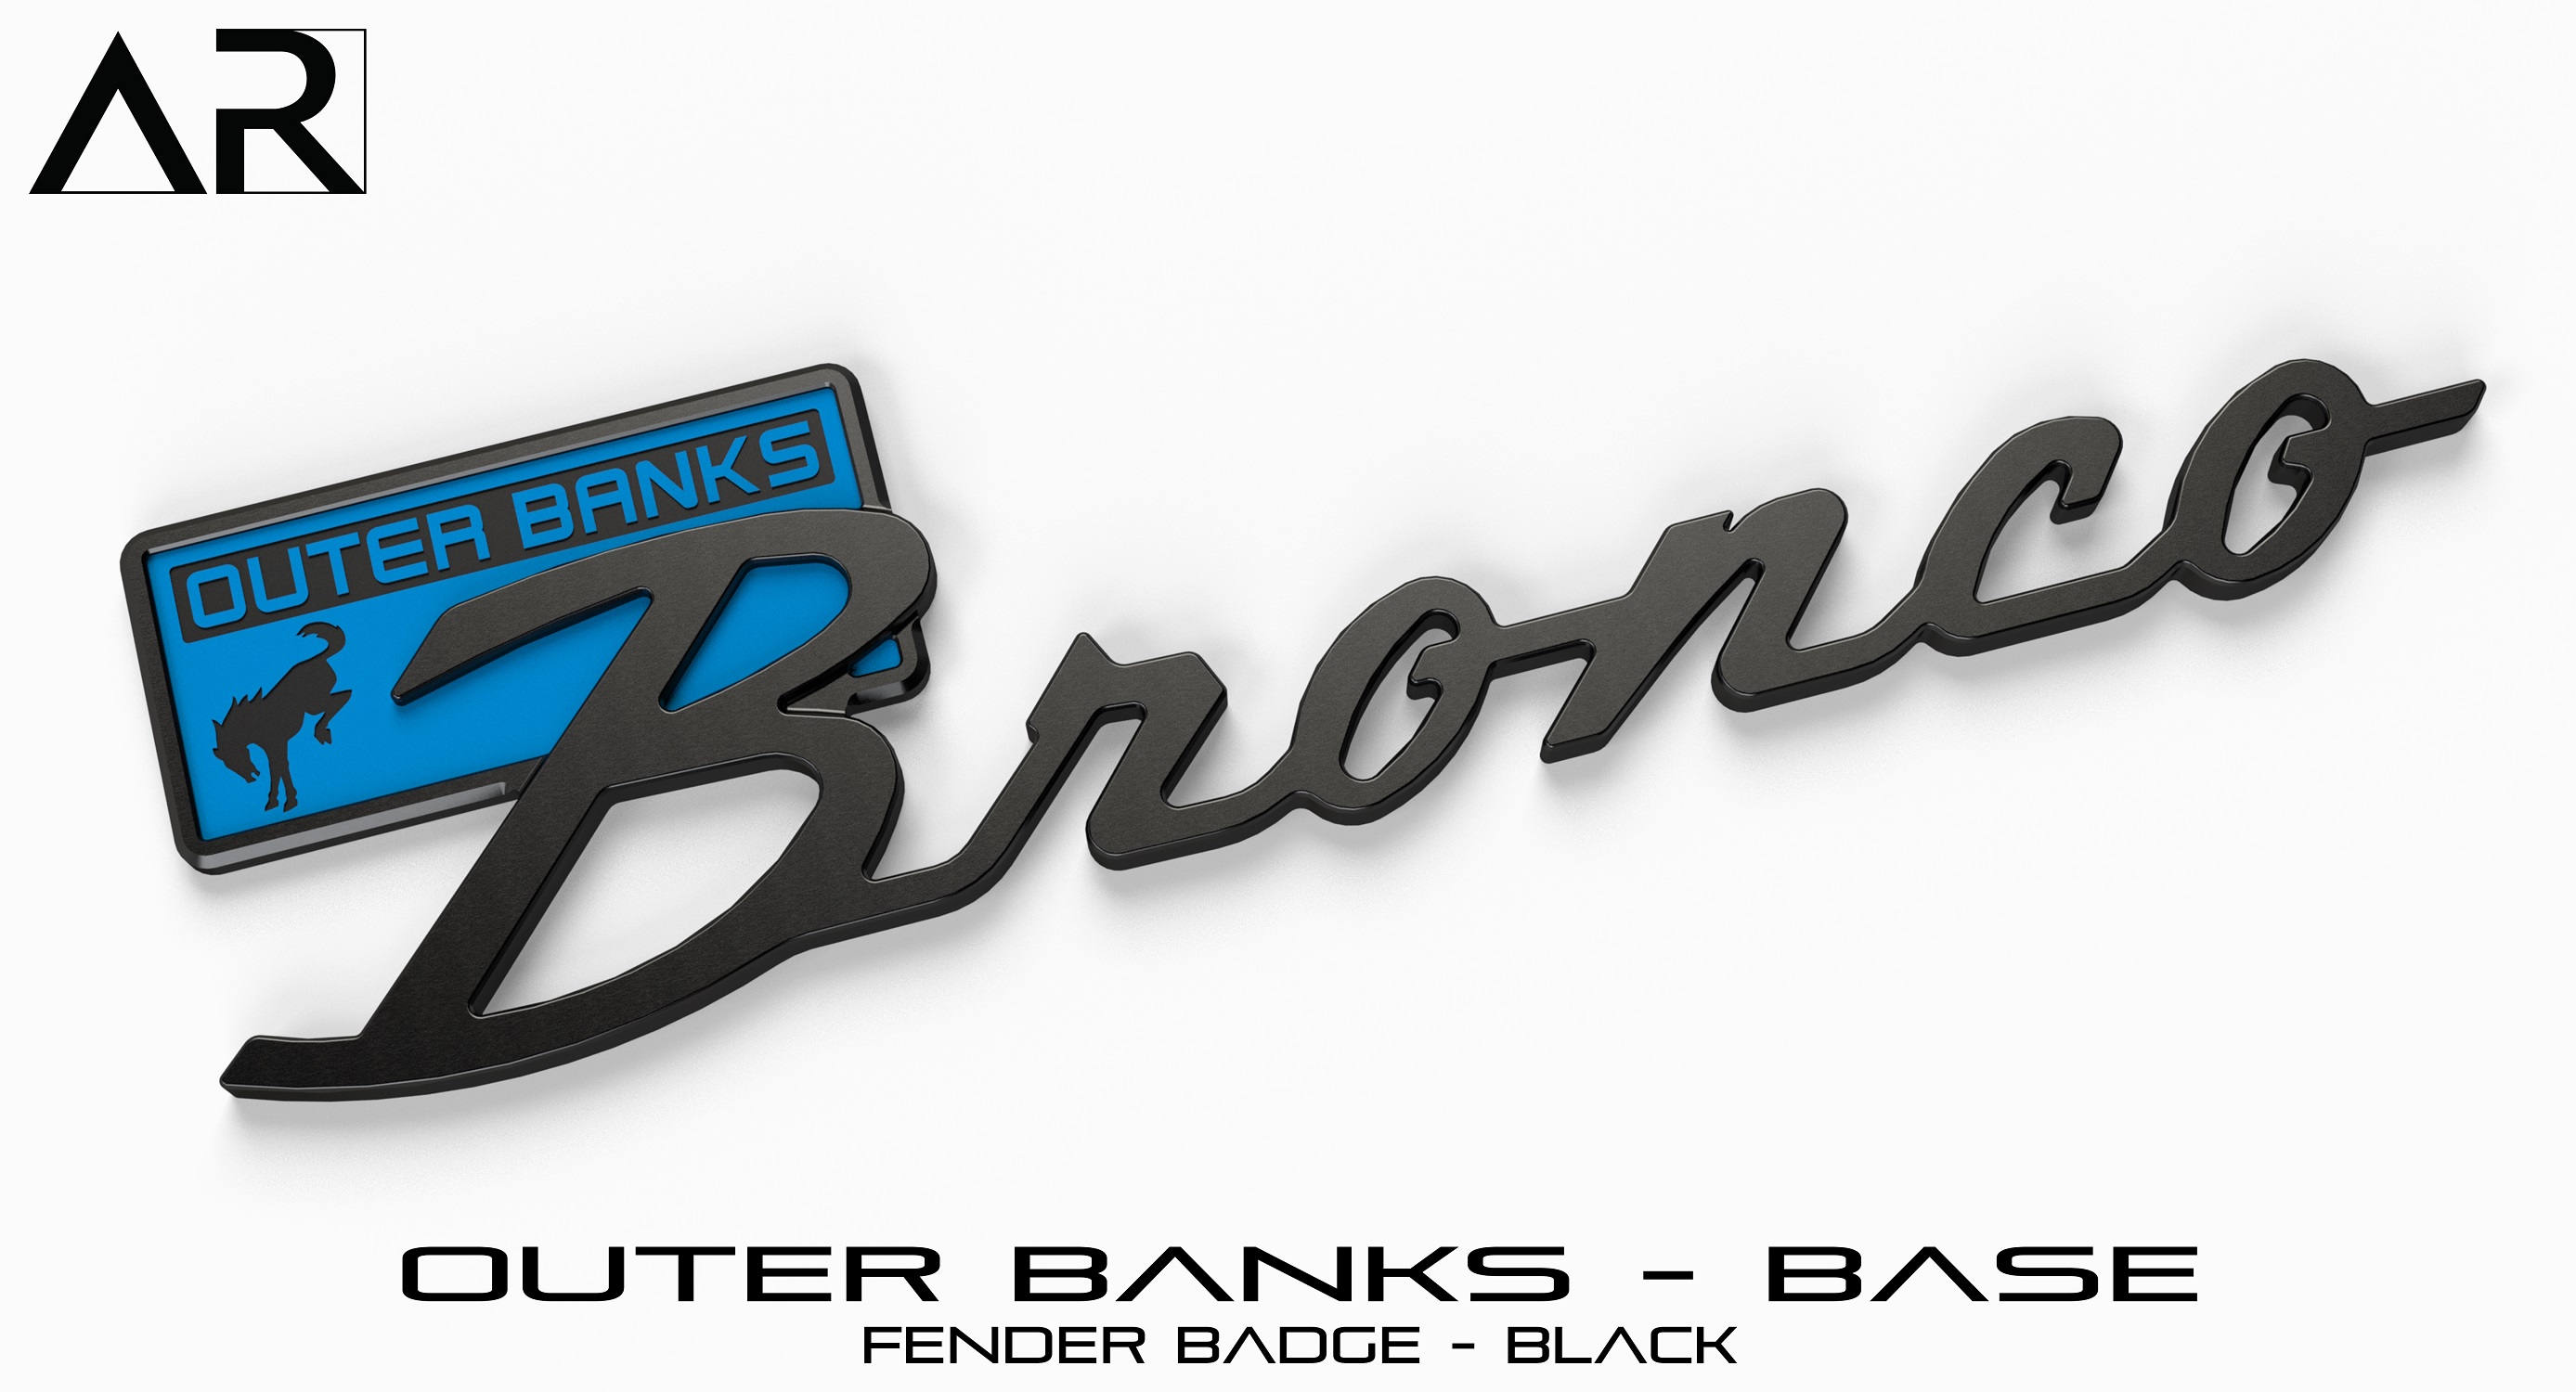 1601006_B  - Fender Badge  - Outer Banks Base - Black.jpg